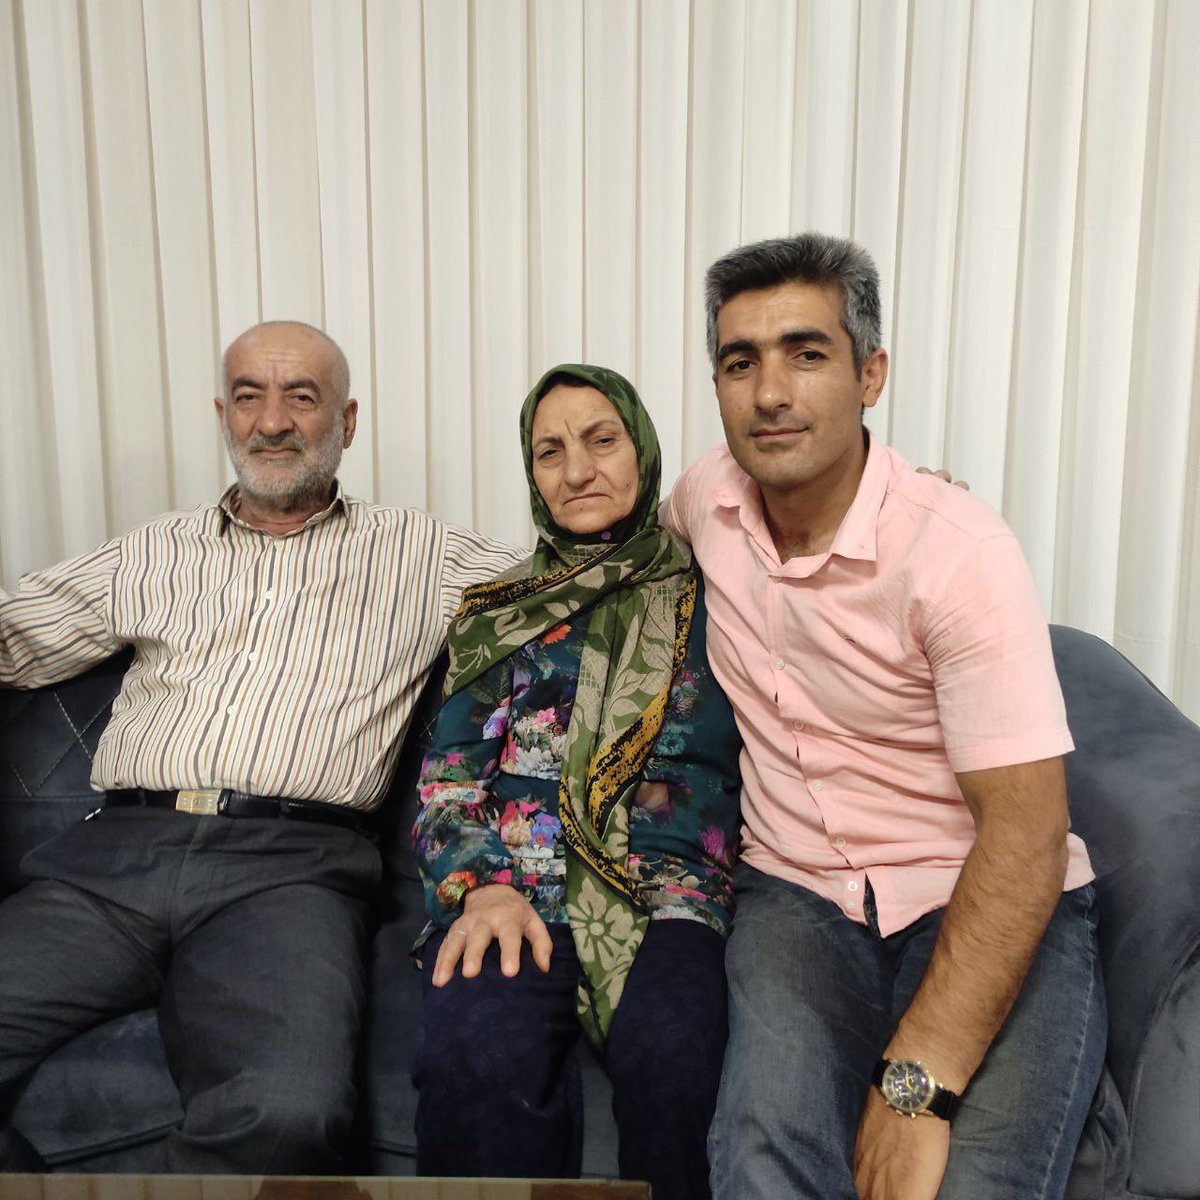 La salute del padre di #JavadHeydari è in pericolo. Il 5 Aprle è stato arrestato dall'#IRGCcotrrorists  al 3 giorno di detenzione e isolamento, è stato portato in ospedale ma è stato trattenuto nel cortile dell'ospedale in modo che non ricevesse cure. Aiutaci. #IranRevolution